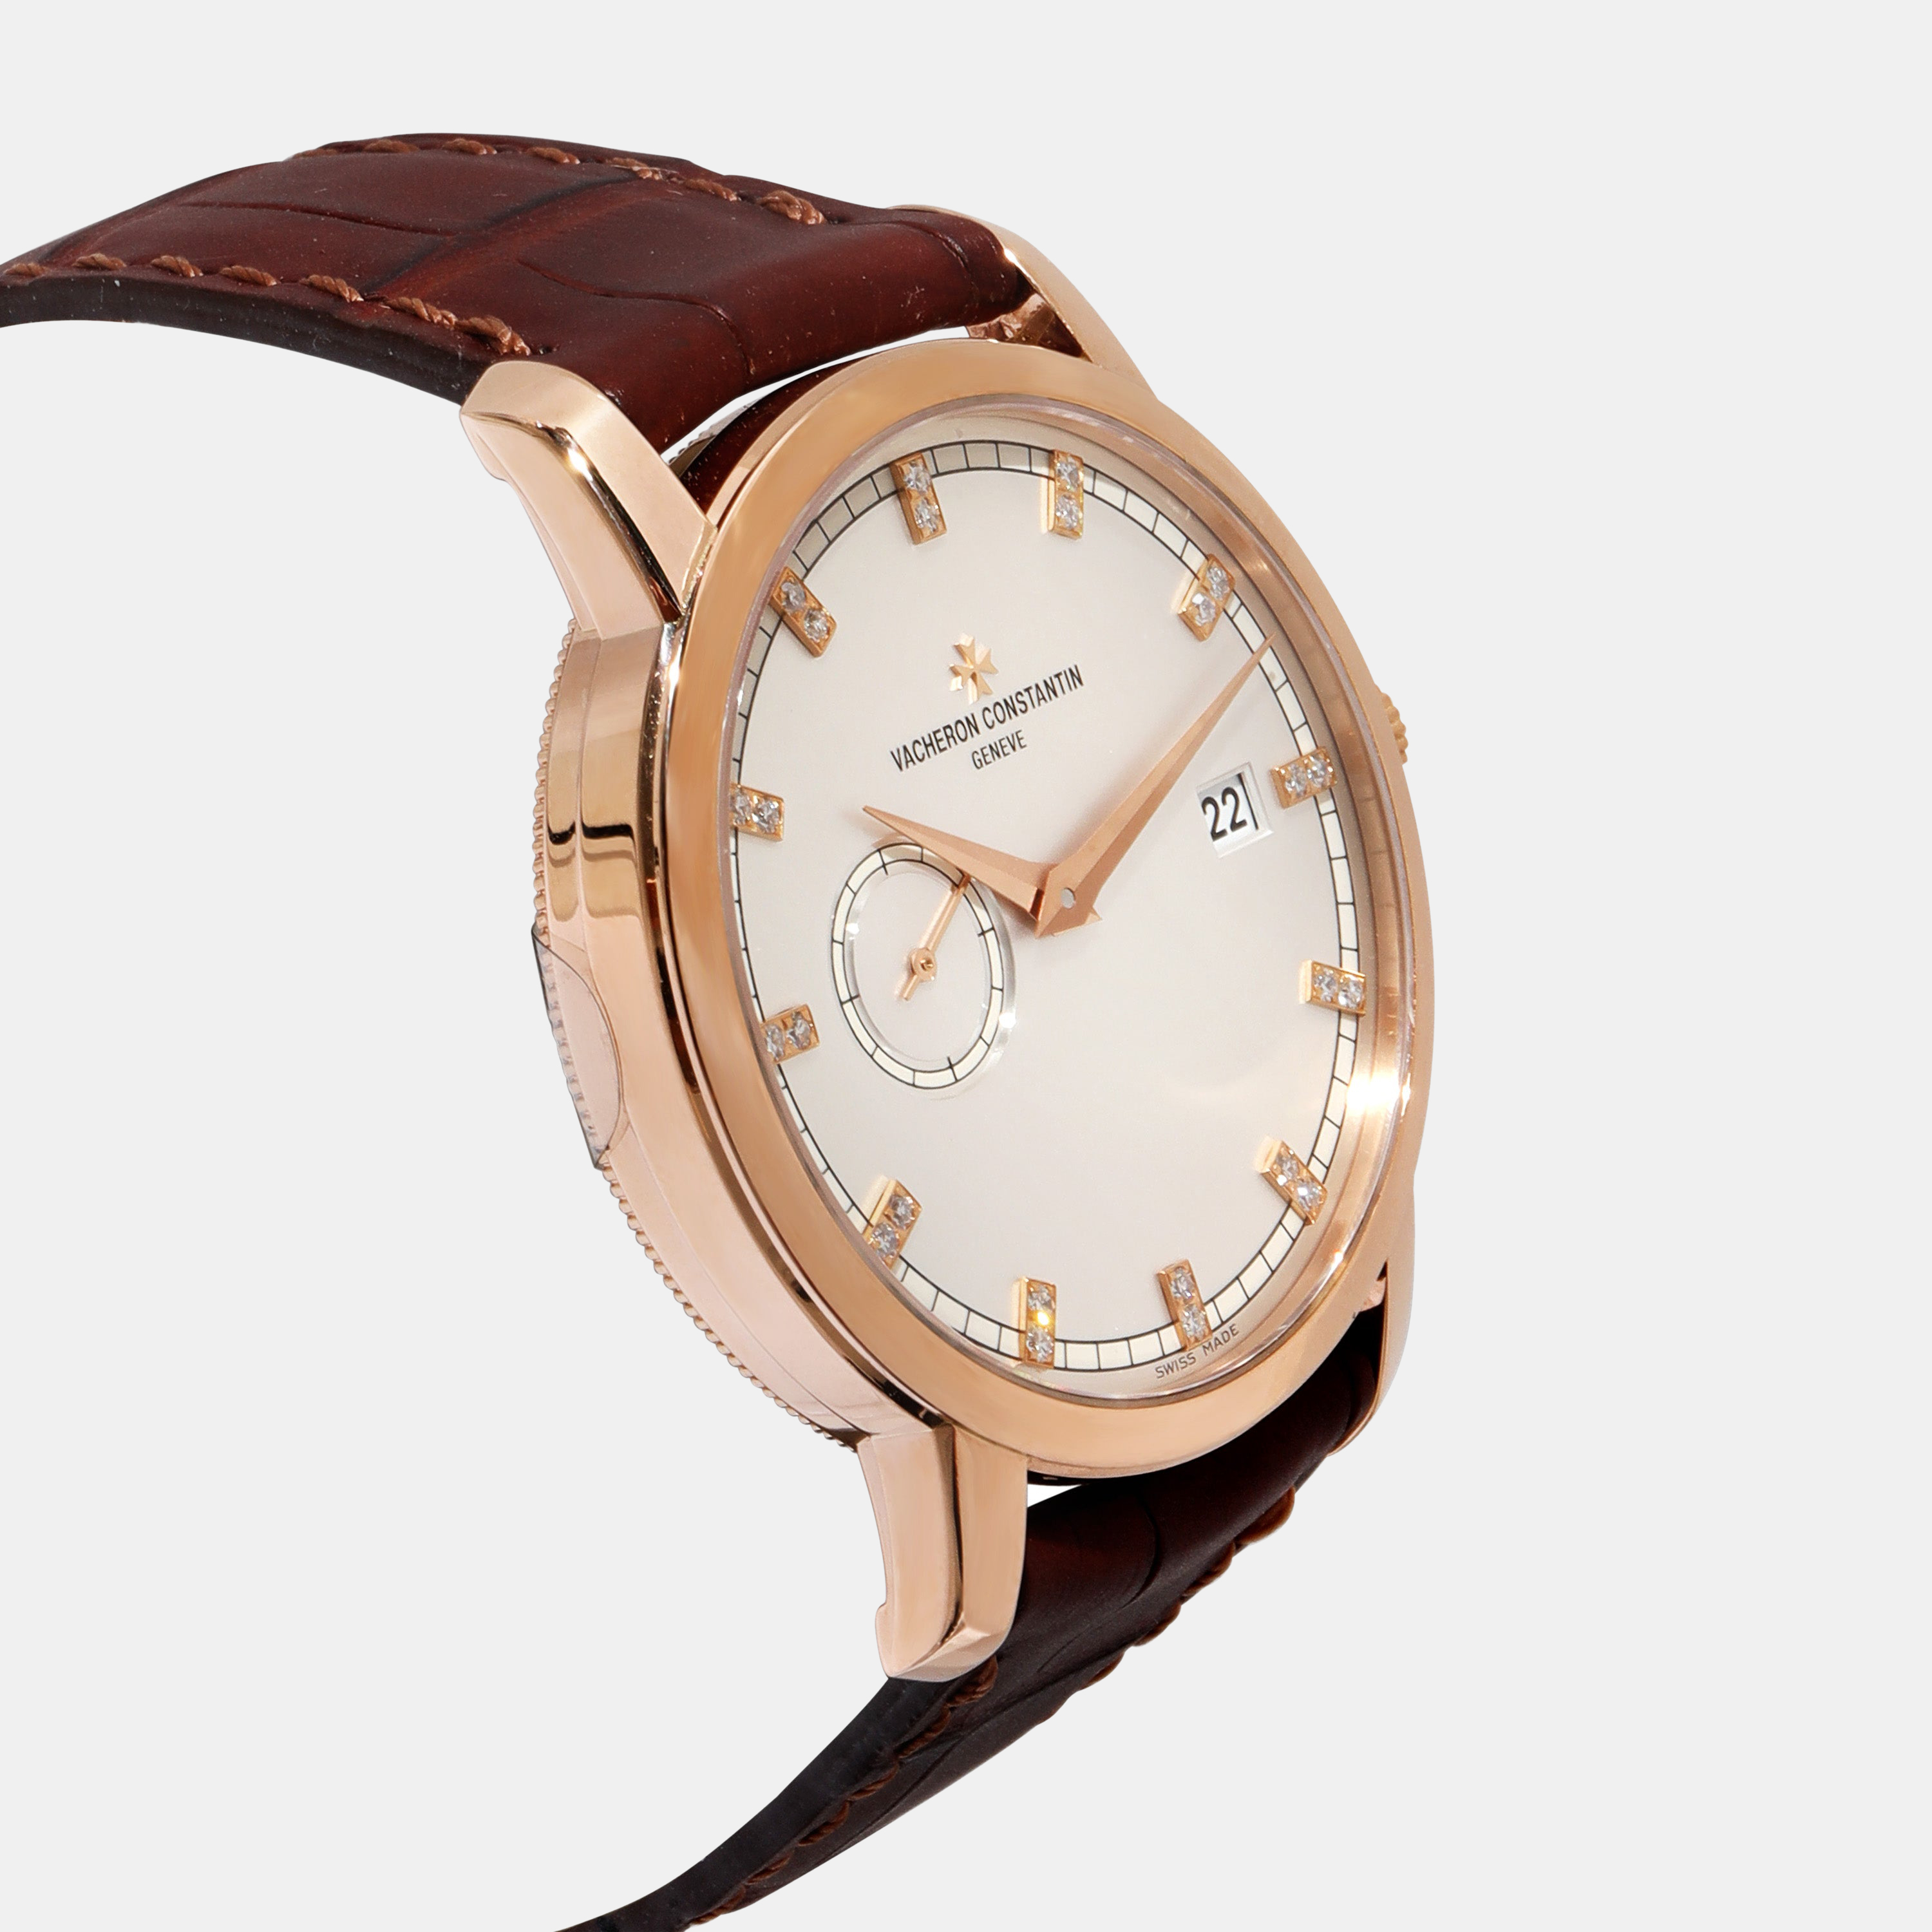 Vacheron Constantin Silver 18k Rose Gold Patrimont Traditionelle 87172/000R-9602 Automatic Men's Wristwatch 38 Mm